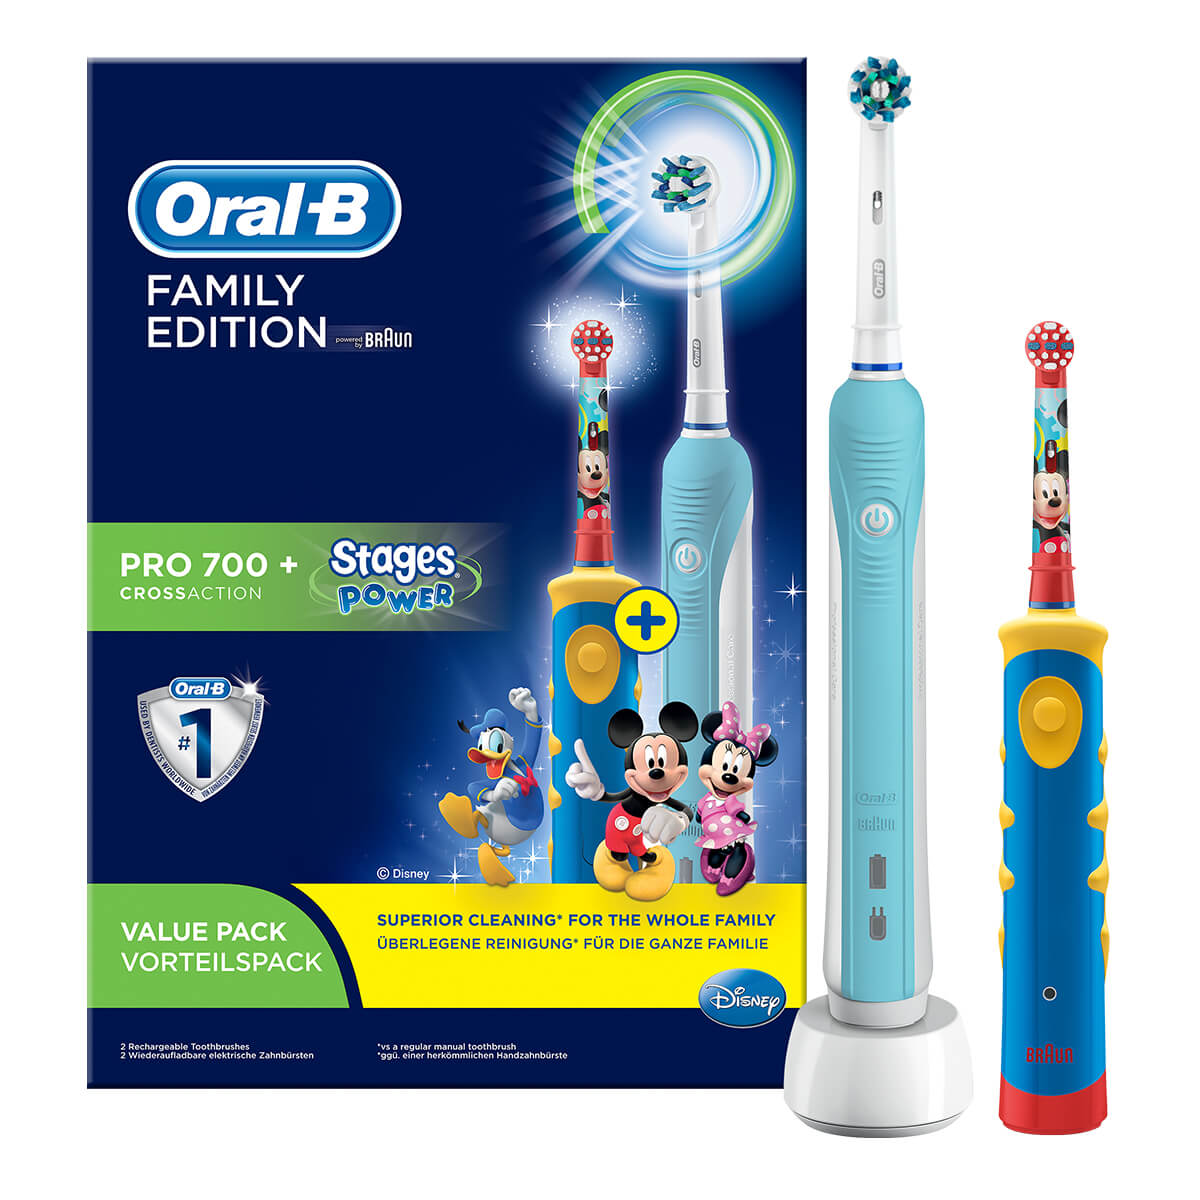 Supplement Aanvrager twee weken Familiepakket elektrische tandenborstels | Oral-B